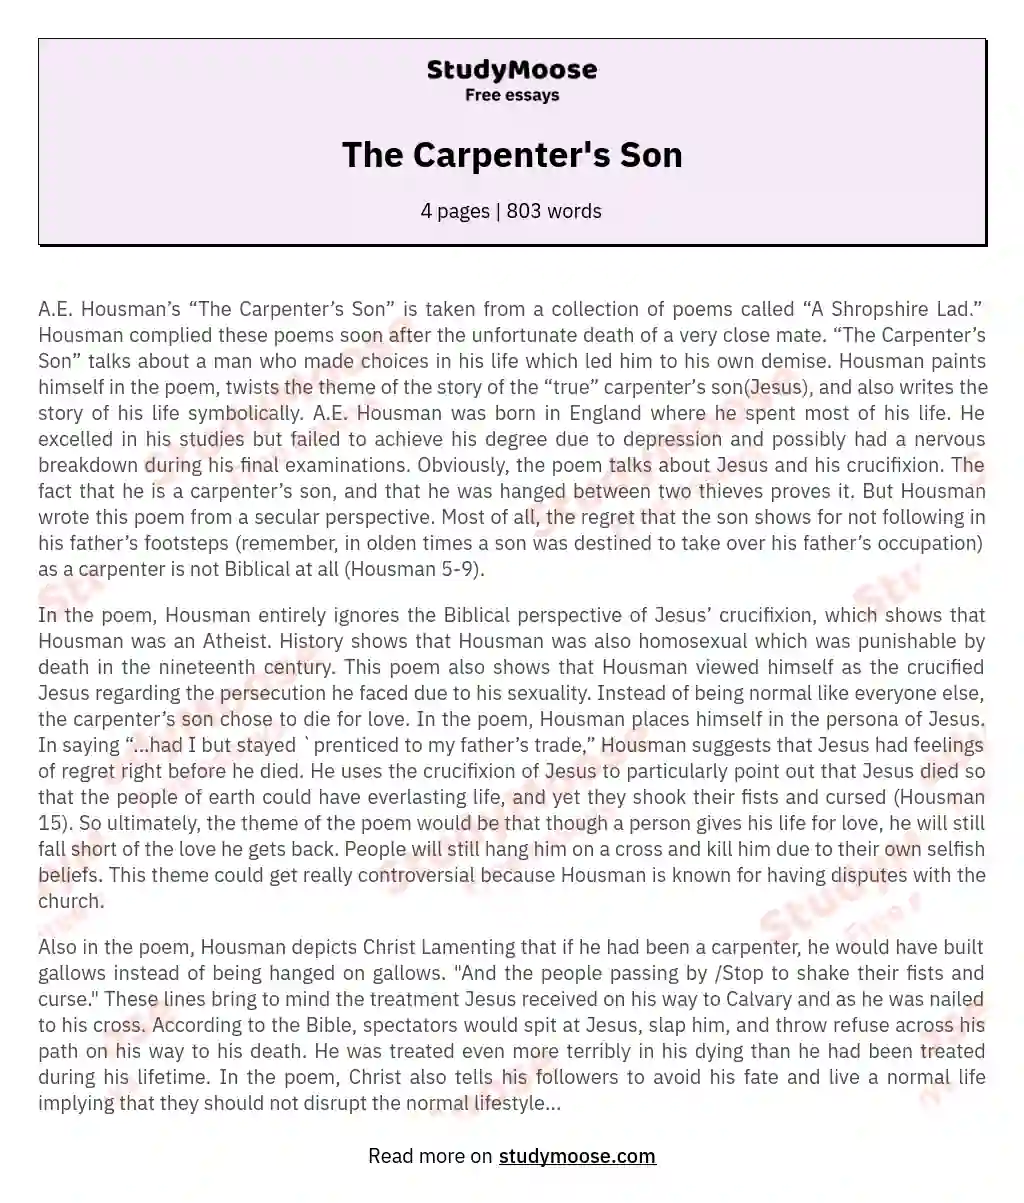 The Carpenter's Son essay